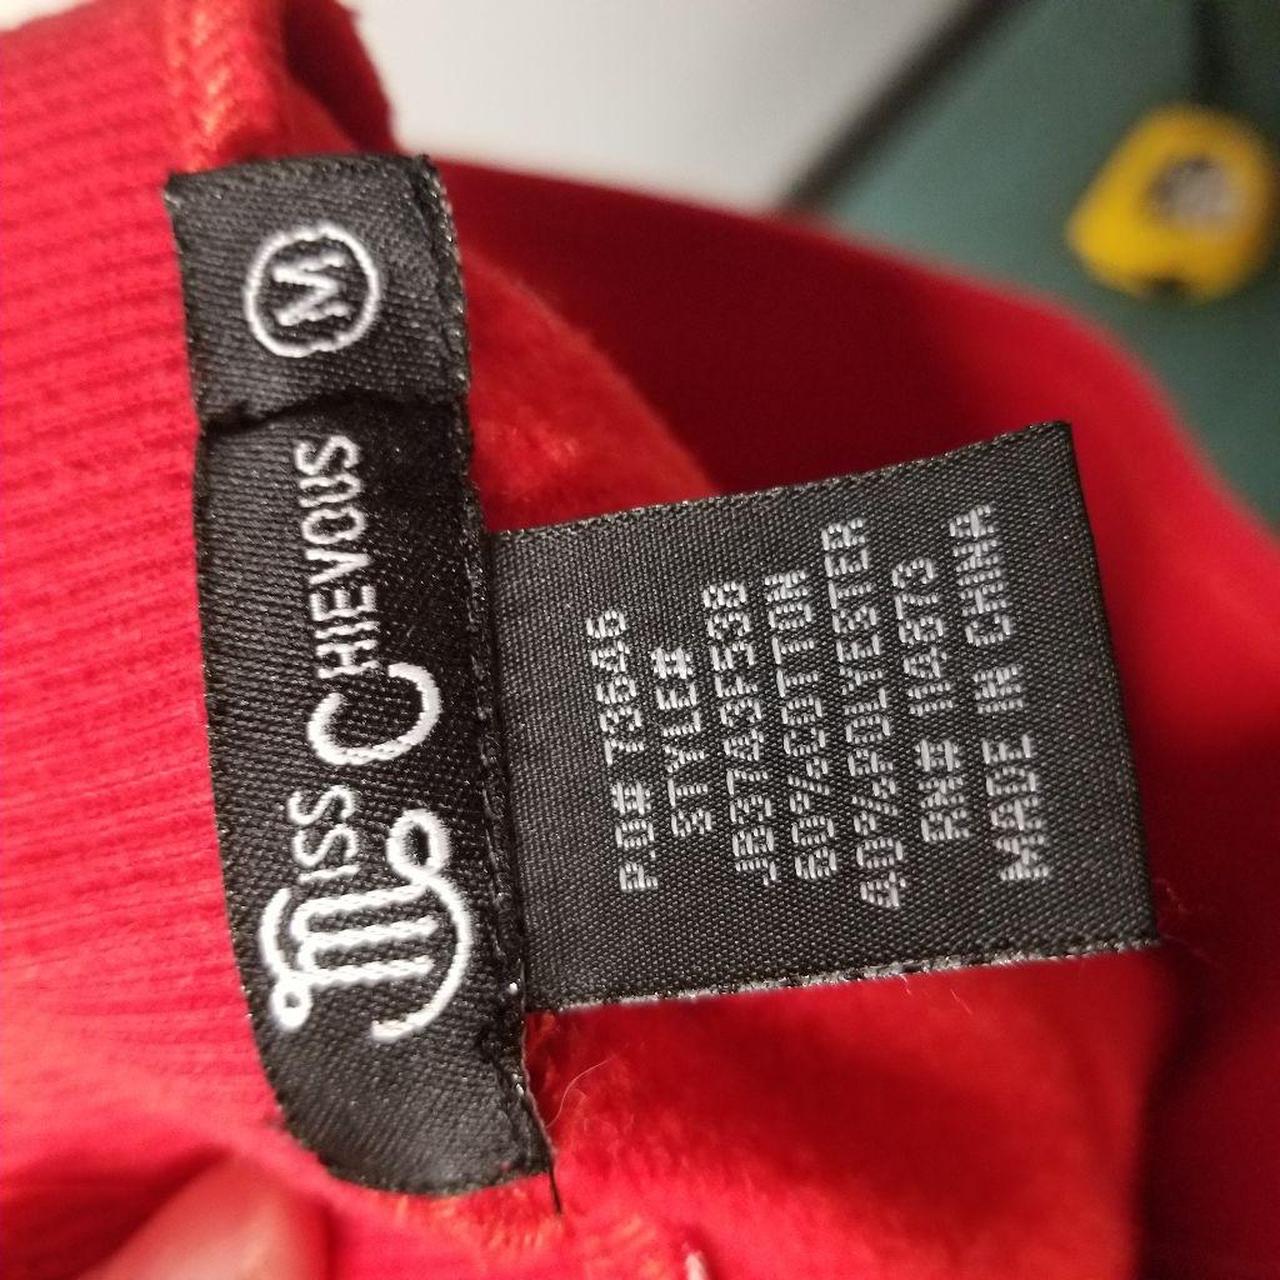 Product Image 4 - Stripe sweat shorts size medium